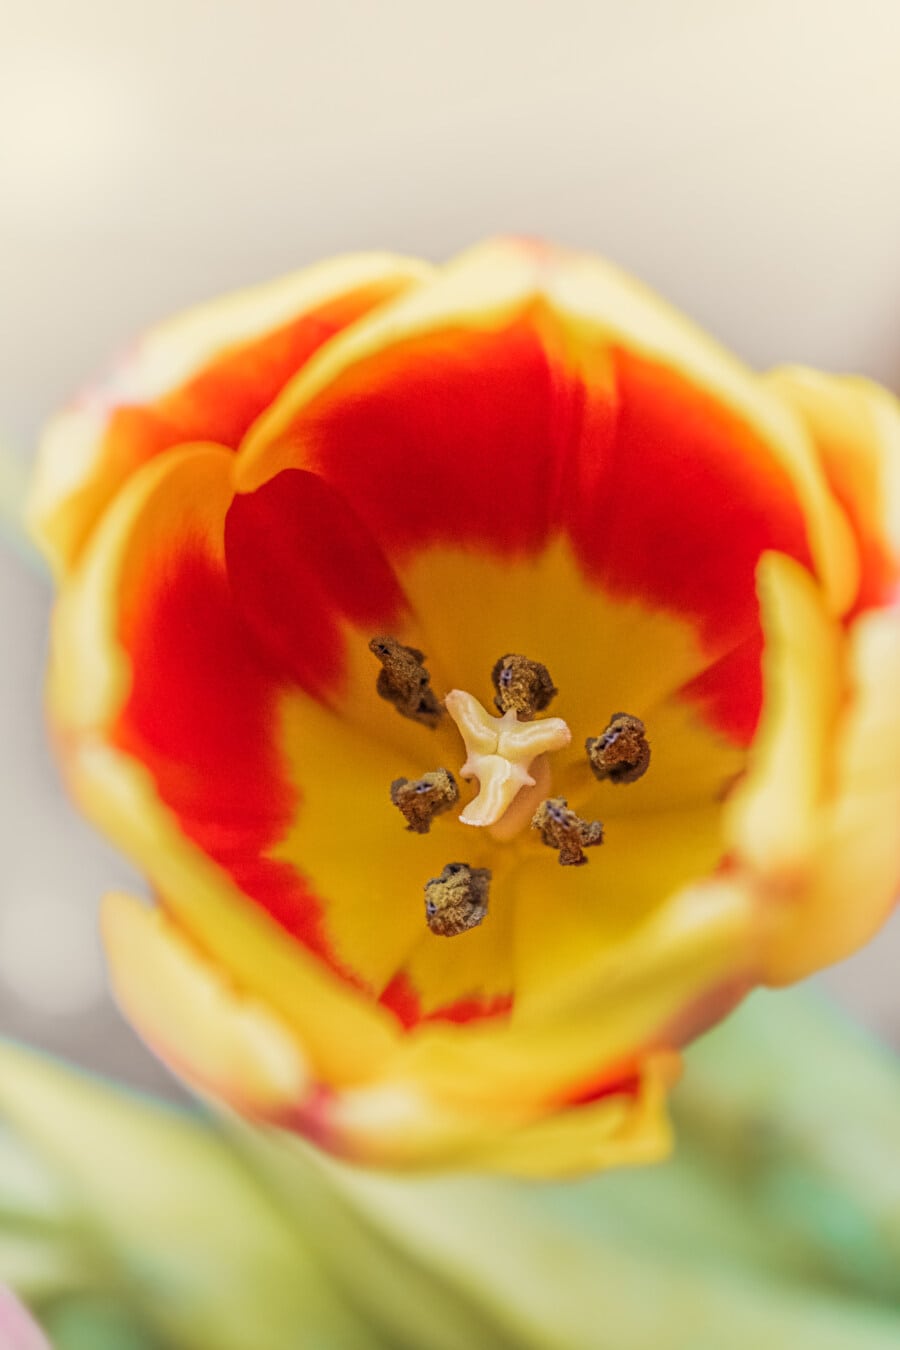 cam màu vàng, hoa tulip, ký-đóng, vĩ mô, phấn hoa, nhụy hoa, tập trung, cánh hoa, hoa, thực vật